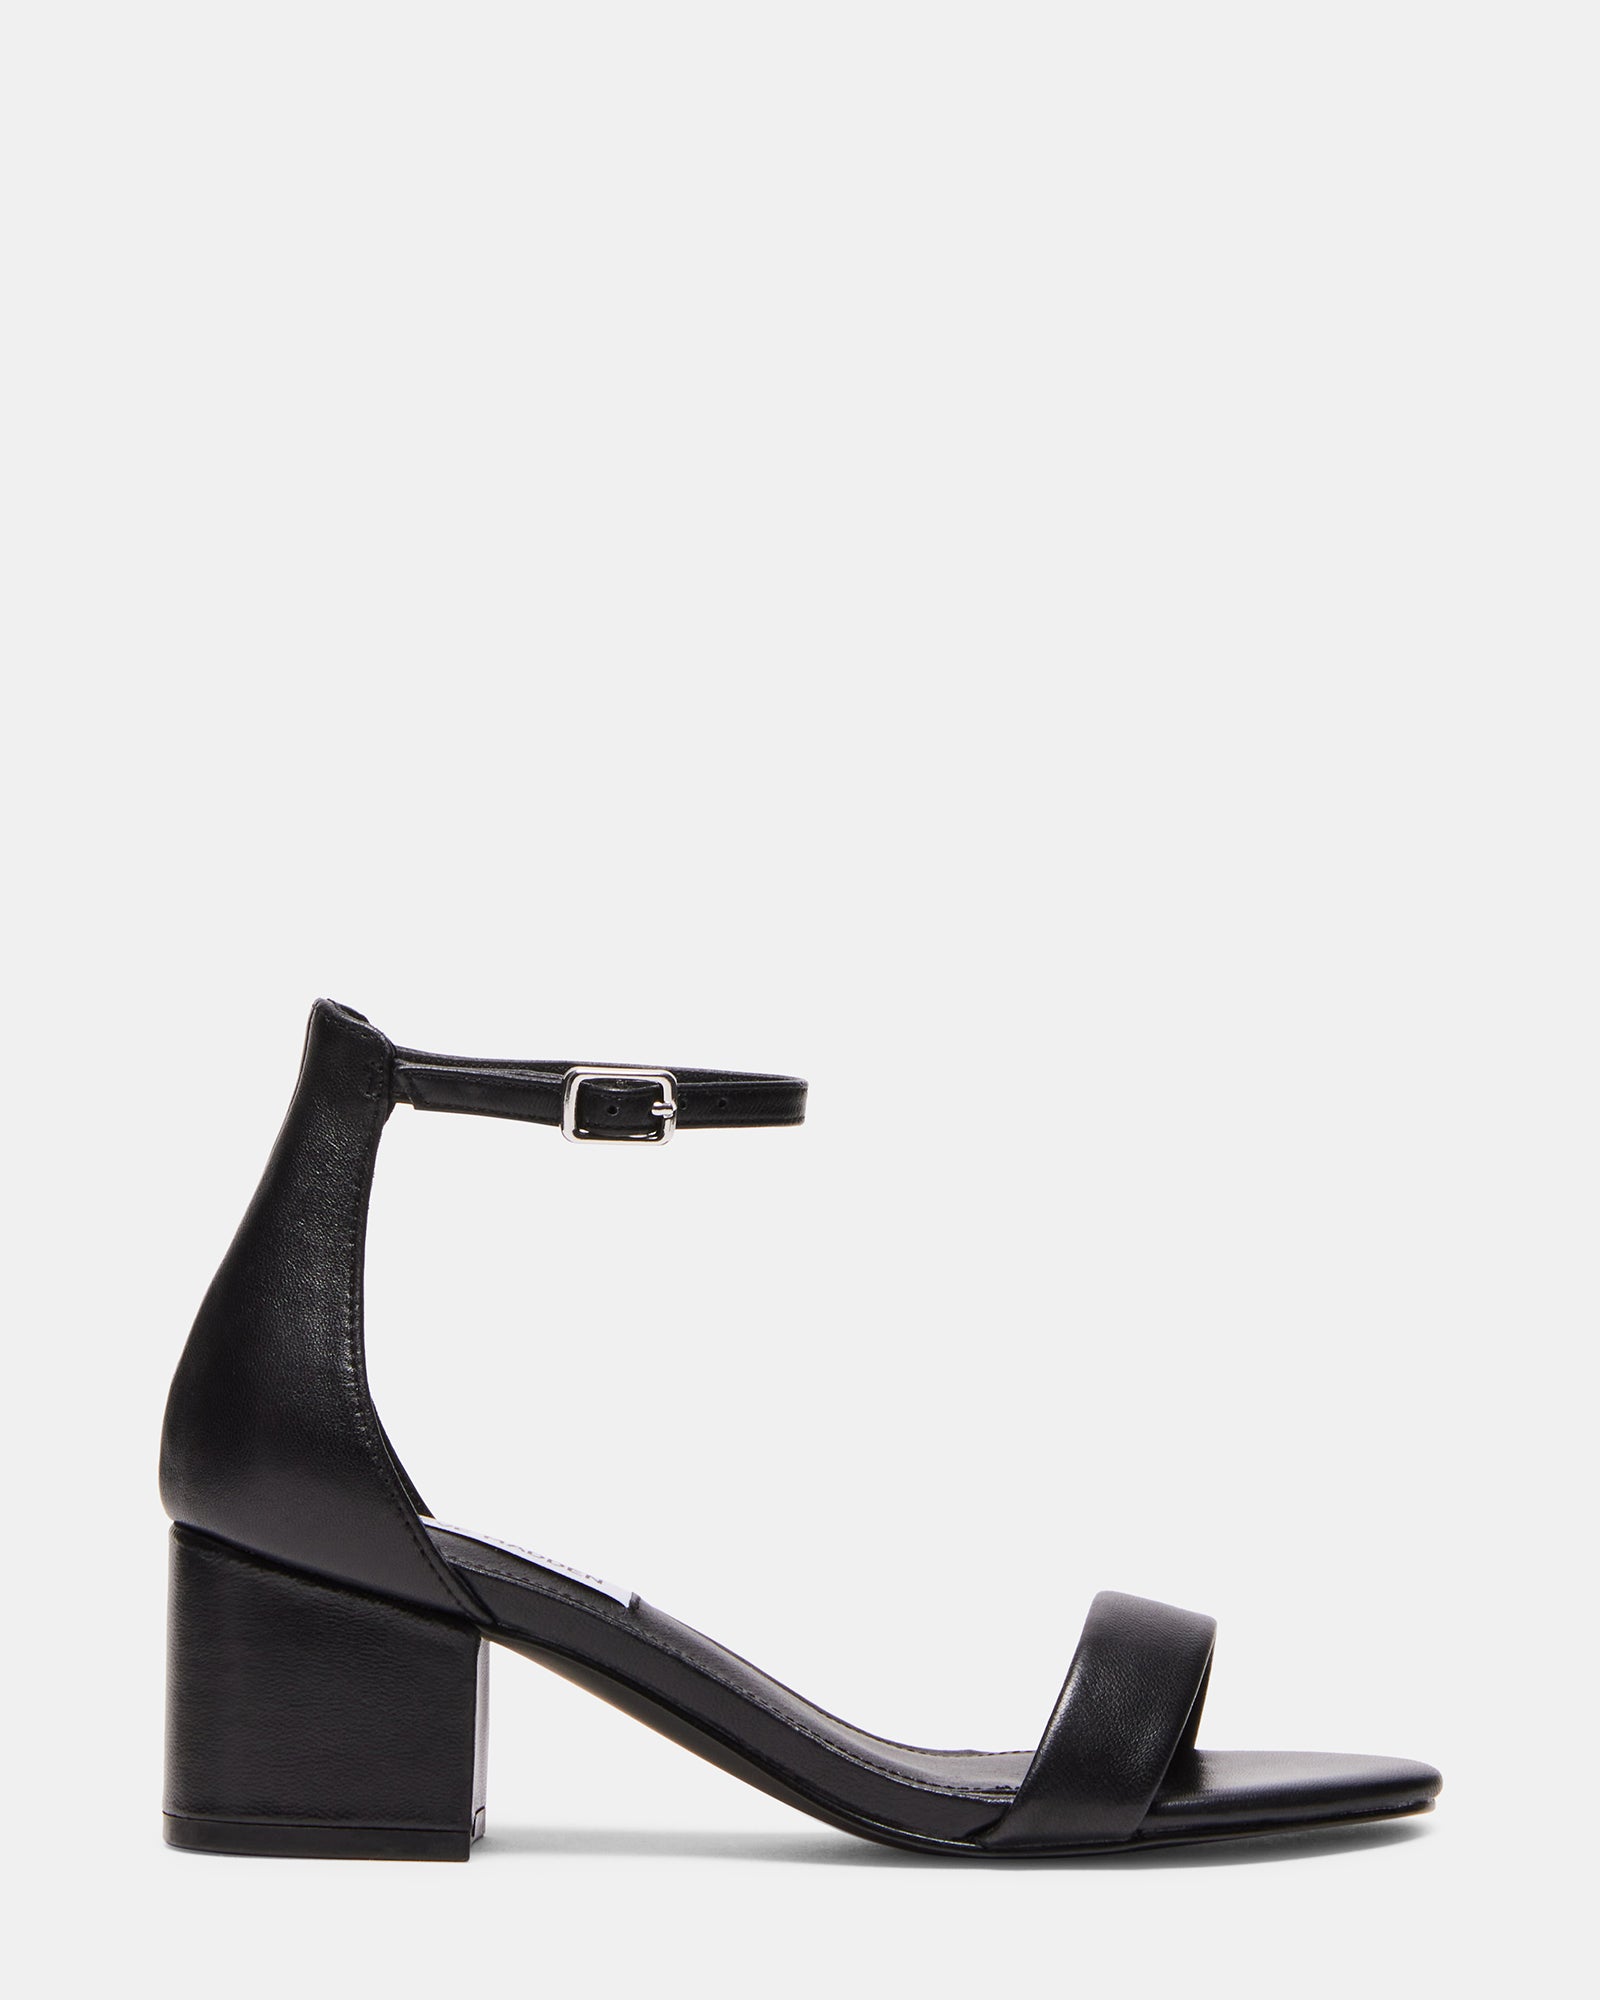 IRENEE Black Leather Heels | 2 Inch Heel | Women's Black Block Heel ...